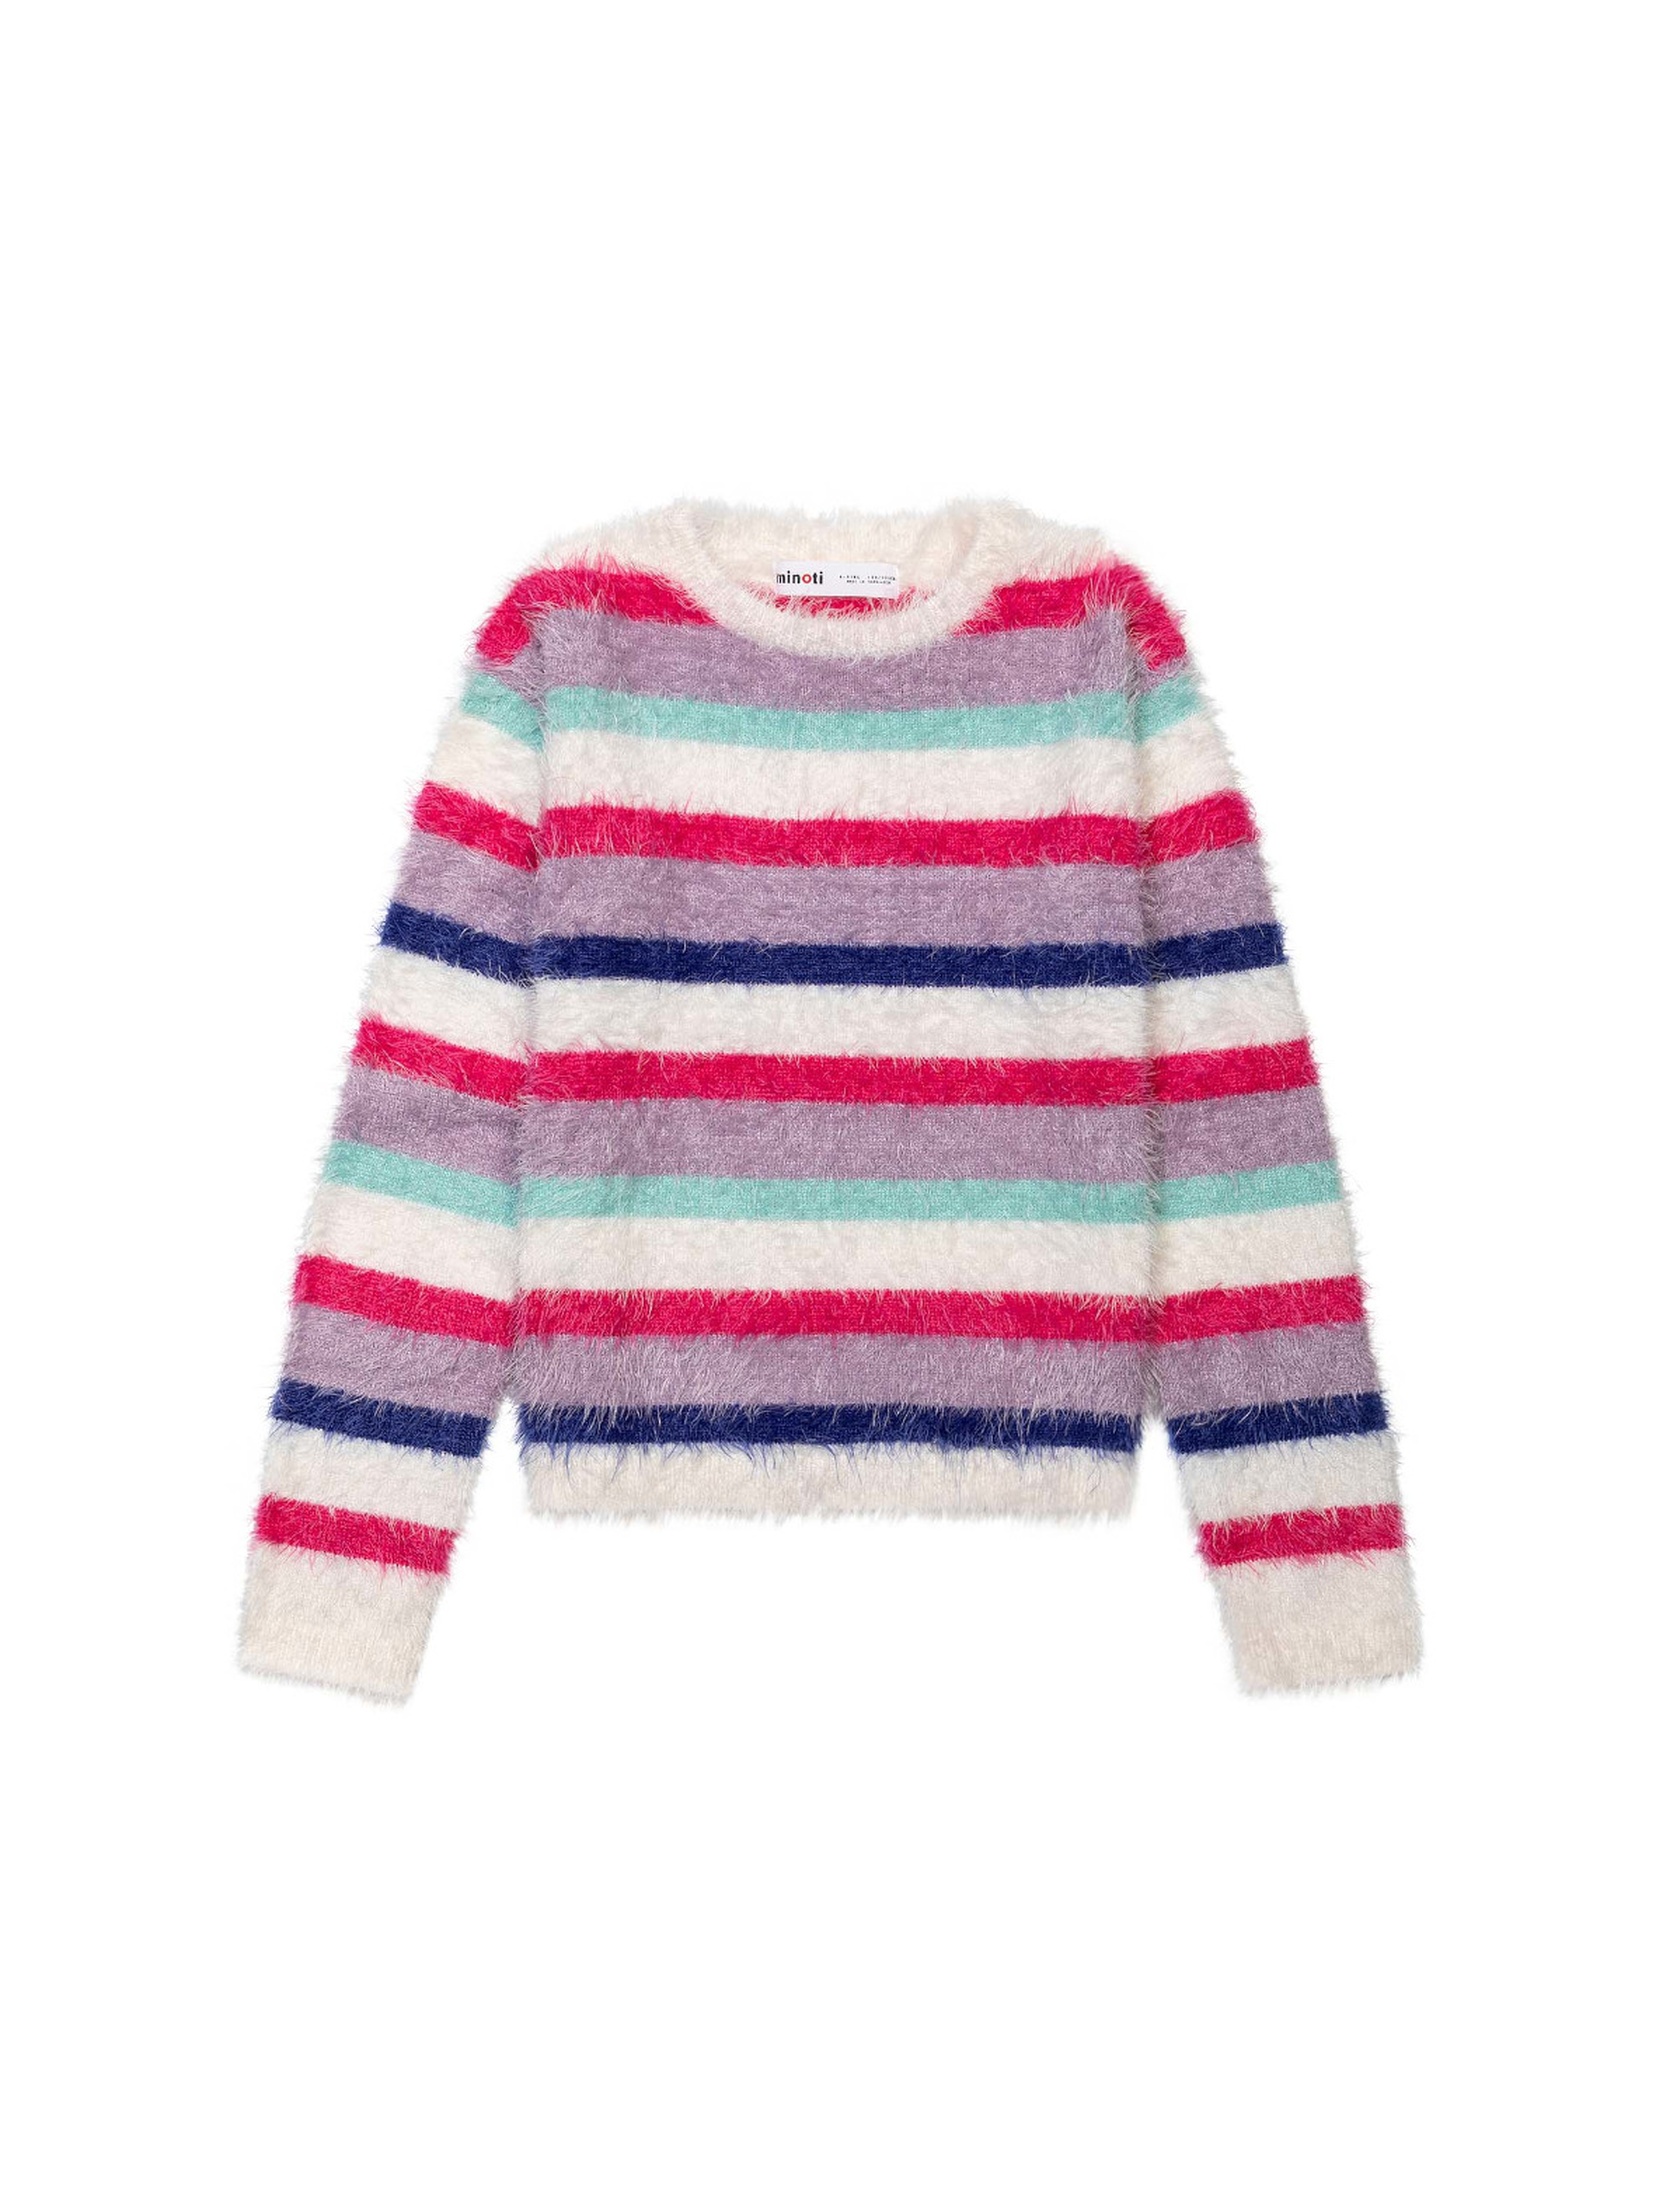 Sweter dziewczęcy w kolorowe paski